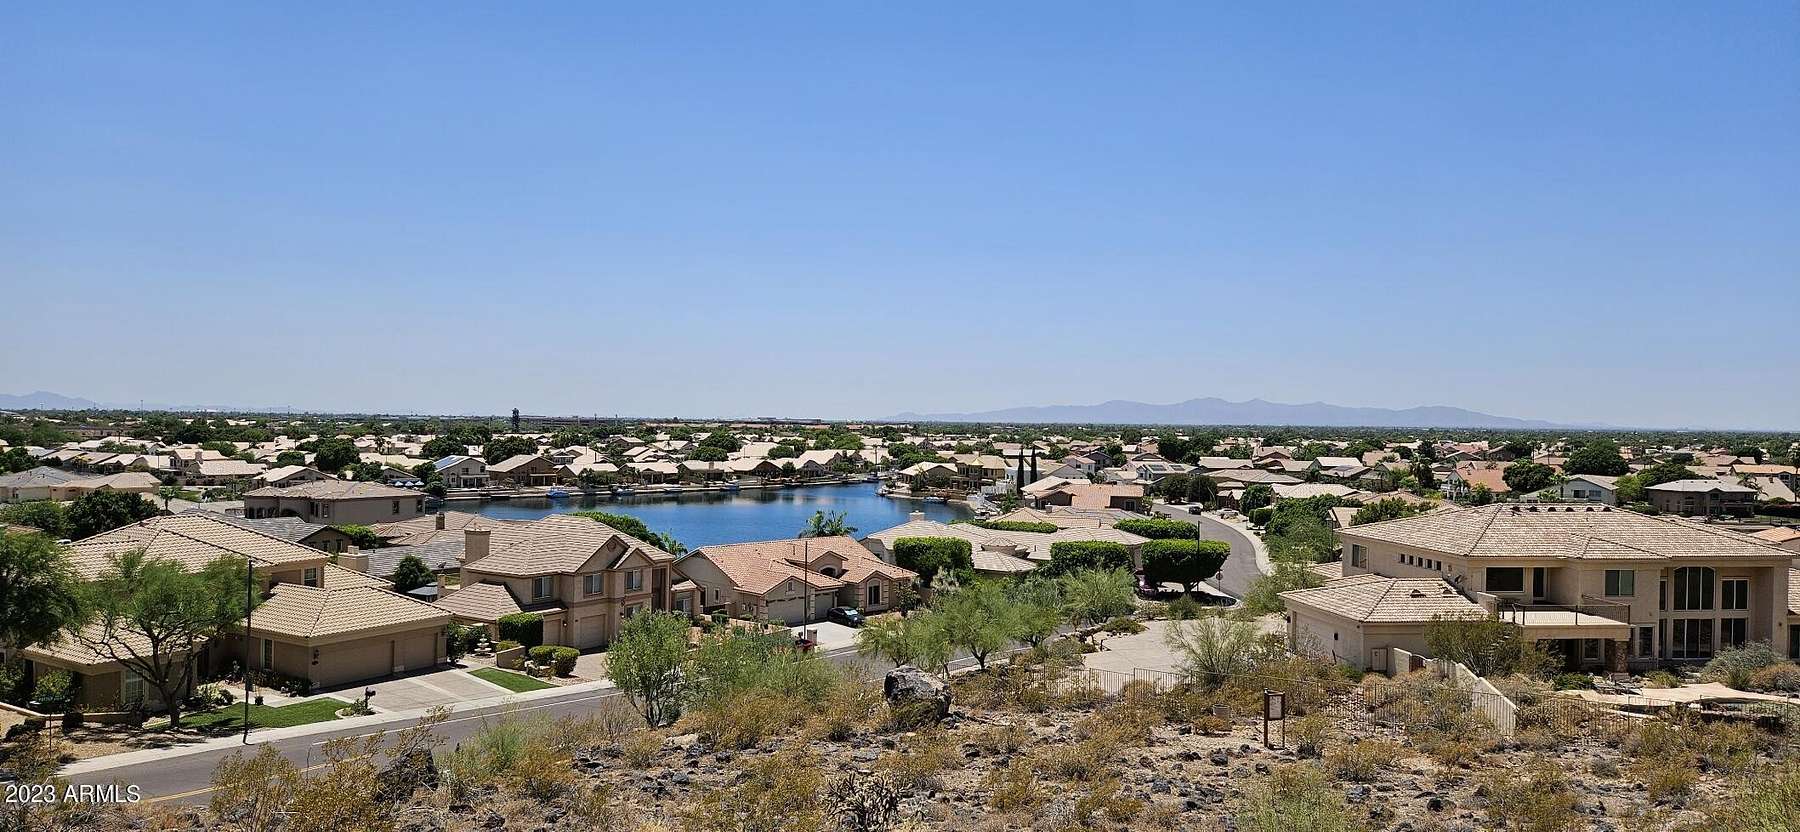 15.3 Acres of Land for Sale in Phoenix, Arizona